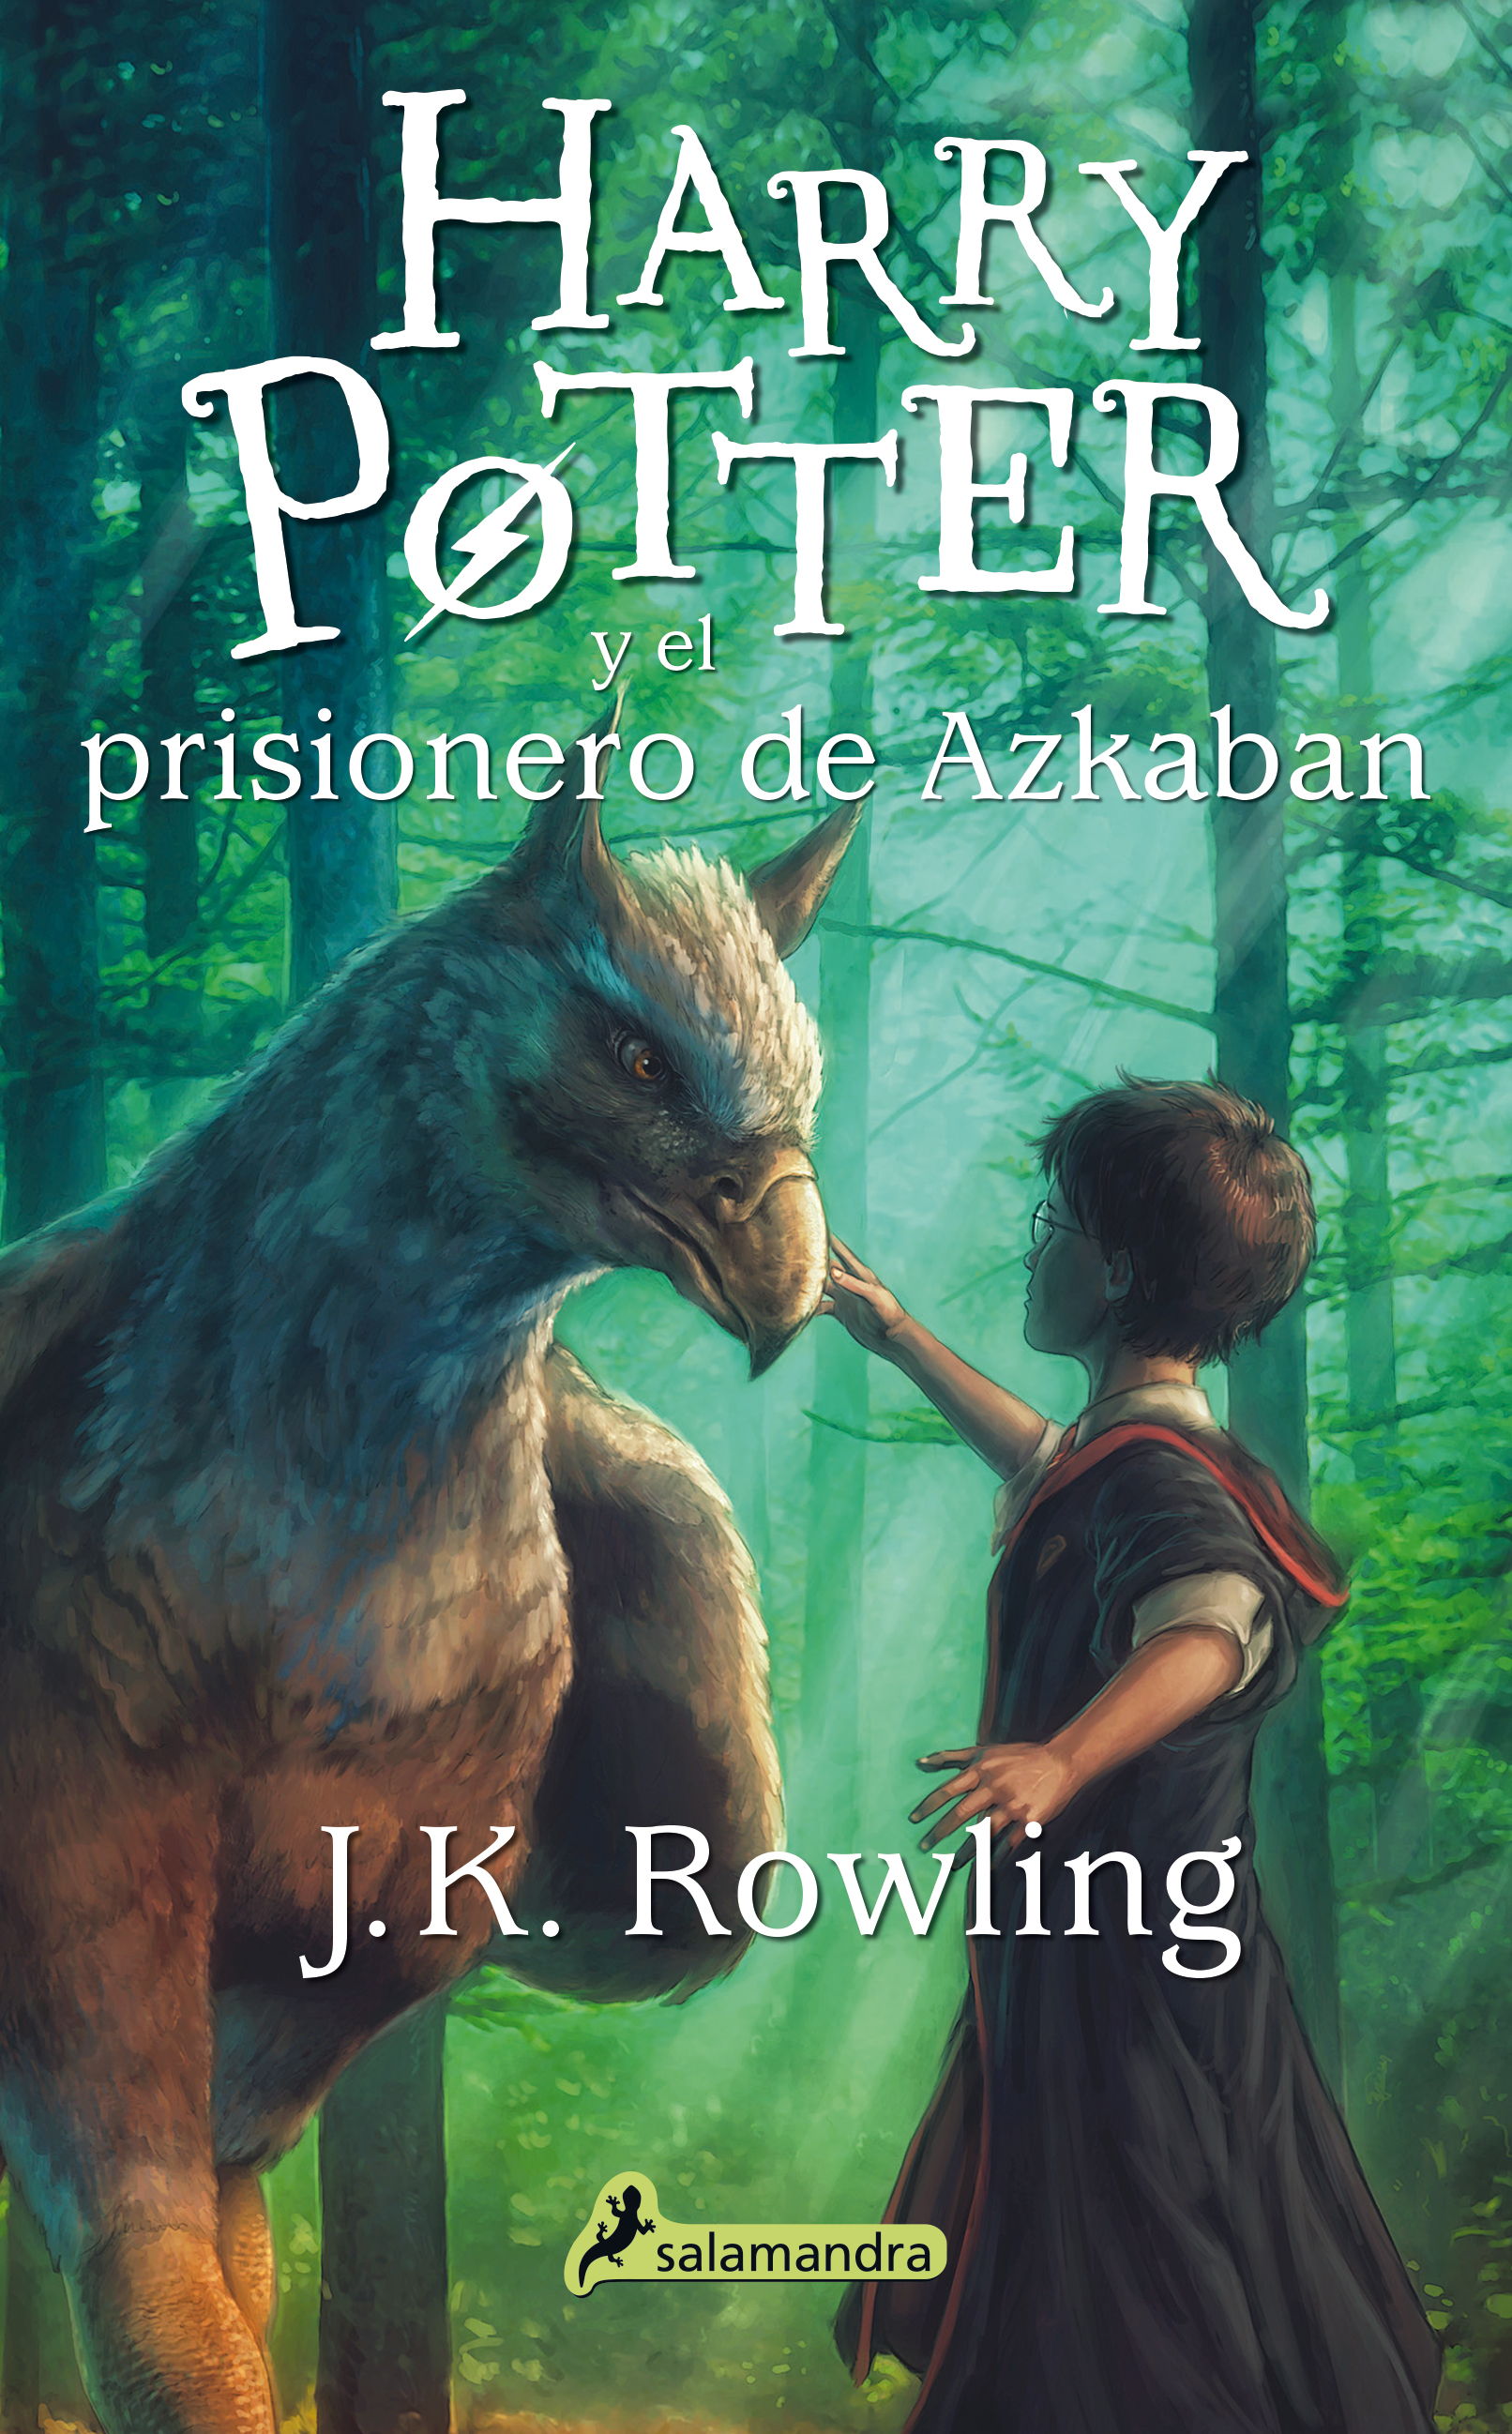 Harry Potter y la piedra filosofal. Ed Ravenclaw - J. K. Rowling -5% en  libros